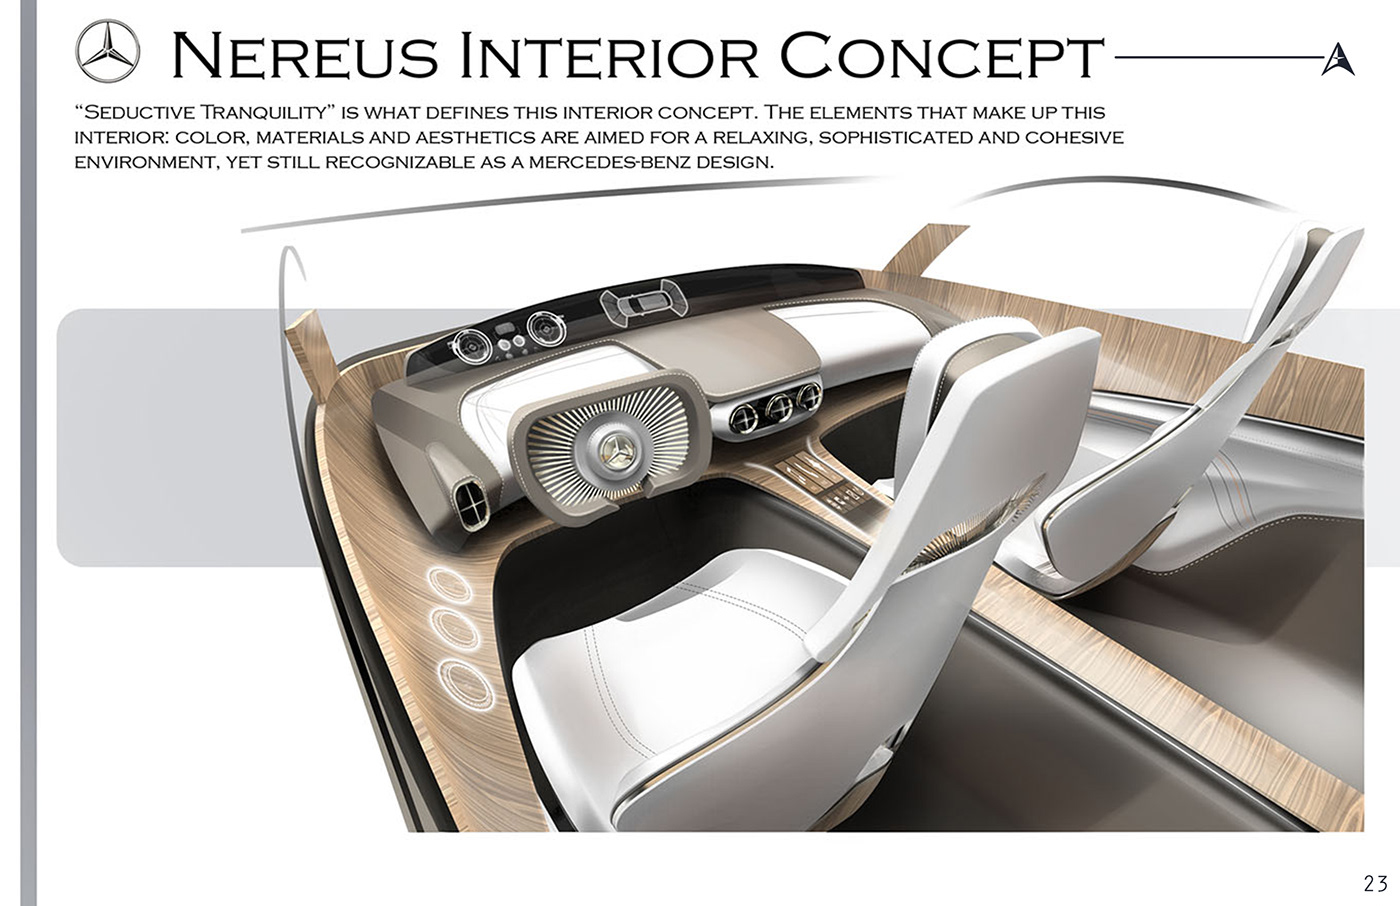 Cars interiors exteriors photoshop Alias CollegeforCreativeStudies furniture design  industrial design  Solidworks